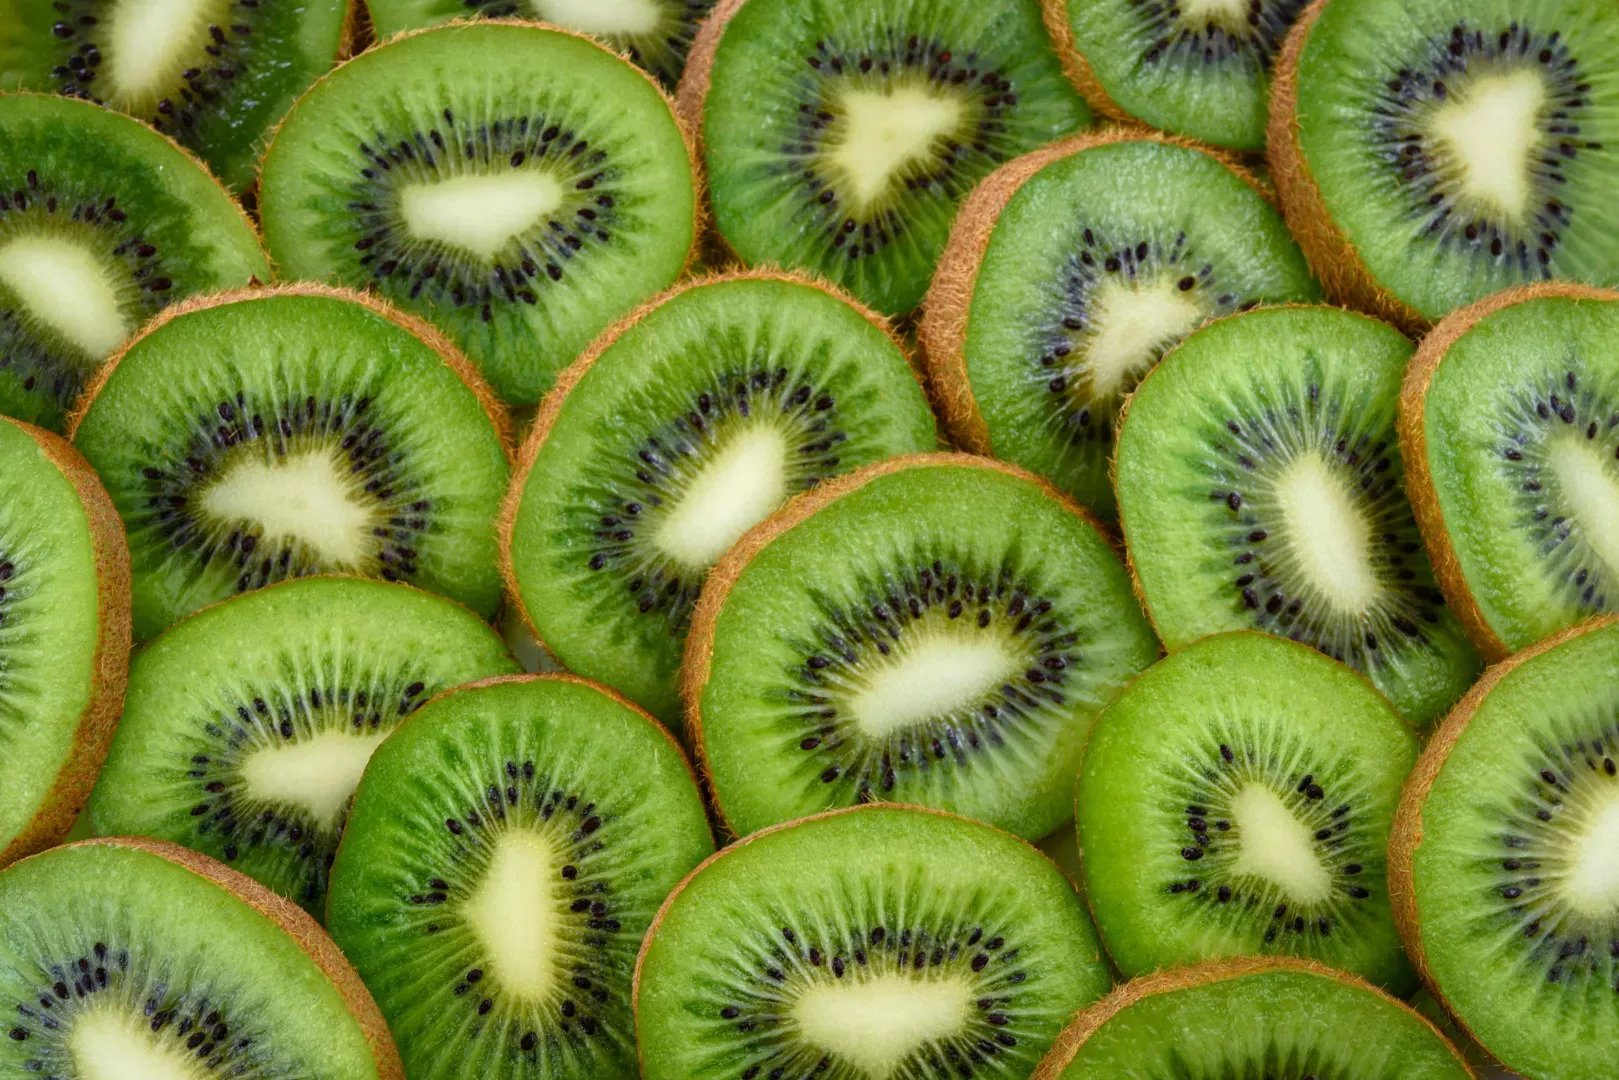 El kiwi: una pequeña fruta con grandes beneficios para tu salud